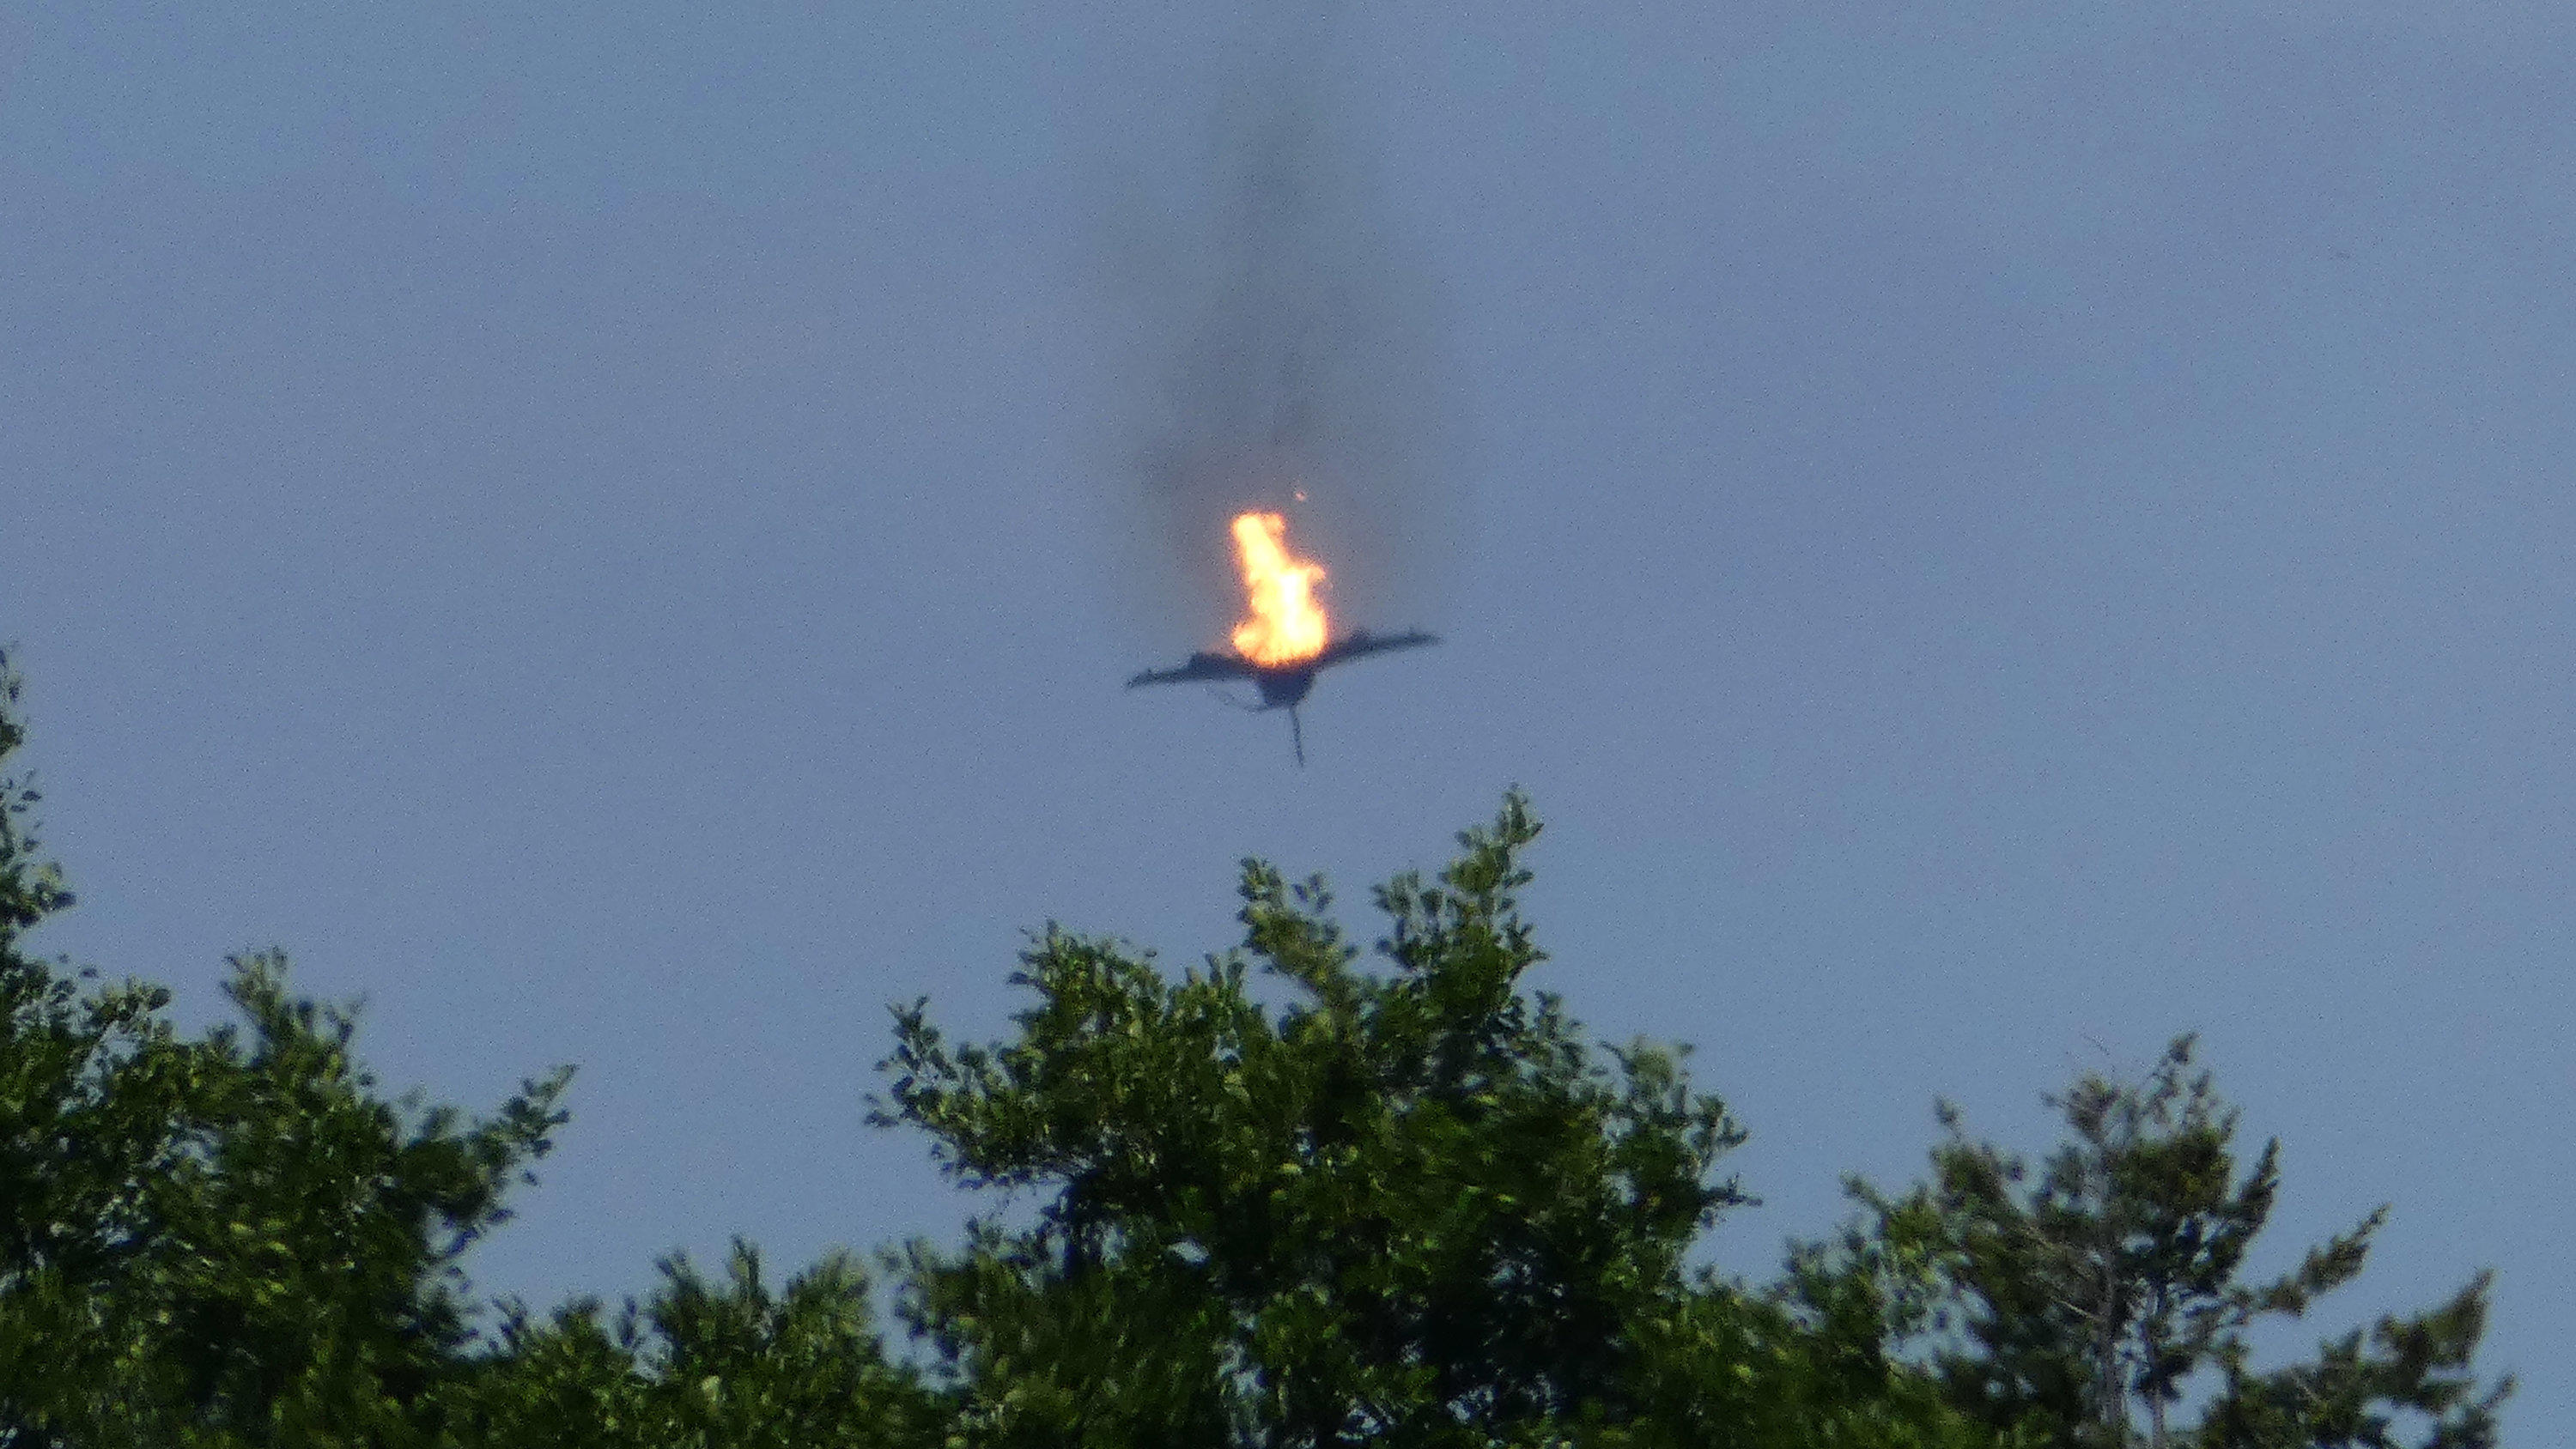 dpatopbilder - 24.06.2019, Mecklenburg-Vorpommern, Malchow: Ein brennendes Flugzeug des Typs "Eurofighter ist am Himmel über der Kleinstadt an der Mecklenburgischen Seenplatte zu sehen. Die Luftwaffe hat am Montag den Absturz von zwei «Eurofightern» 